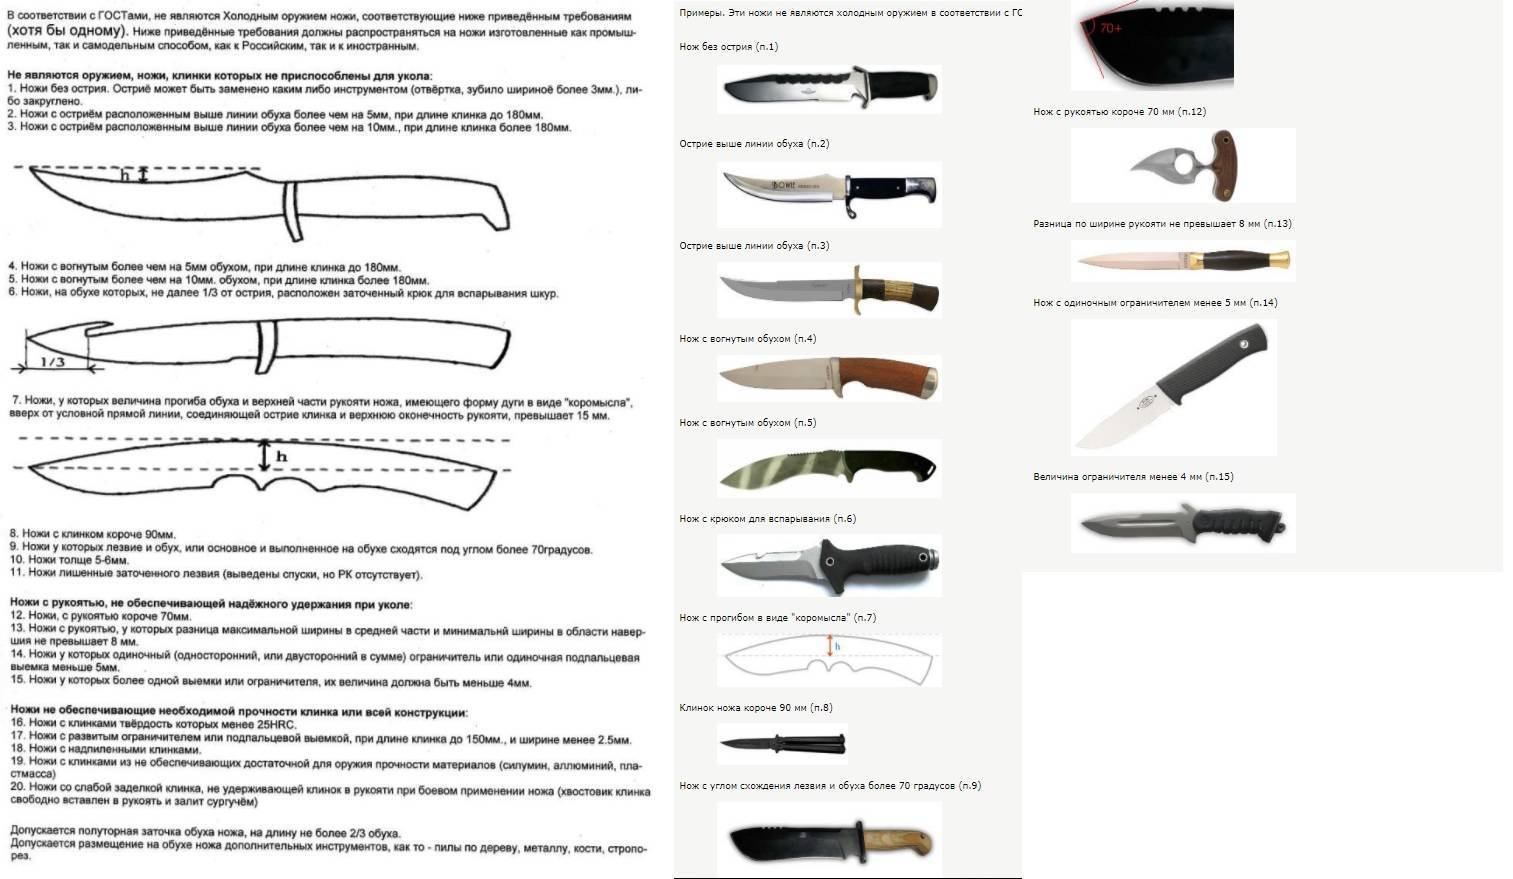 Ножи - всё о ножах: модели ножей